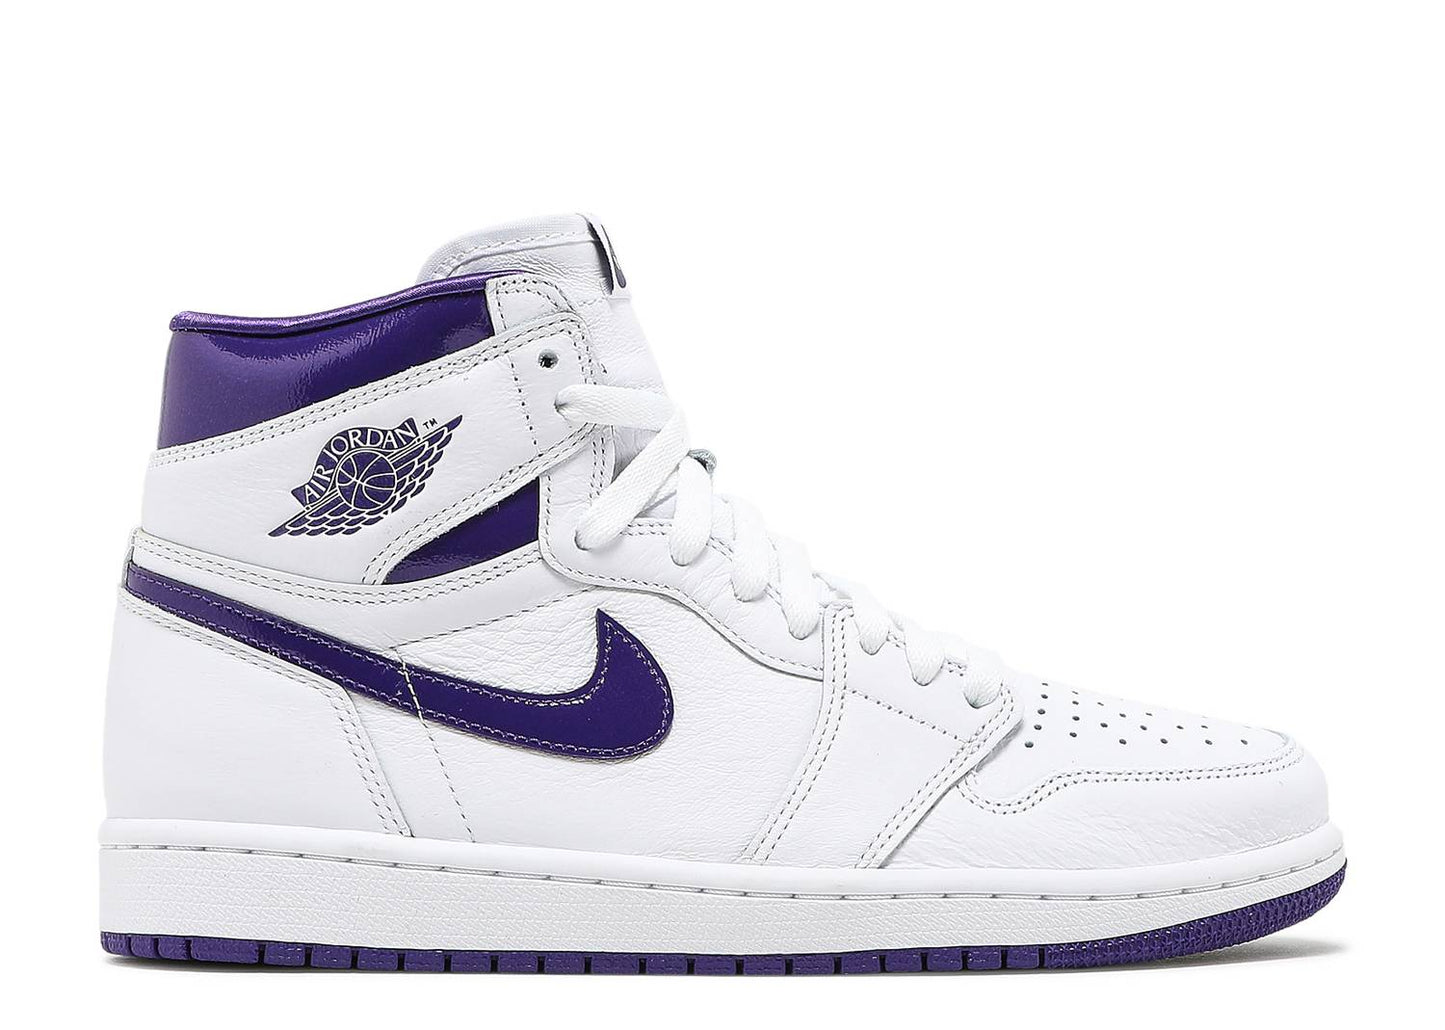 Jordan 1 "White Court Purple" (W)